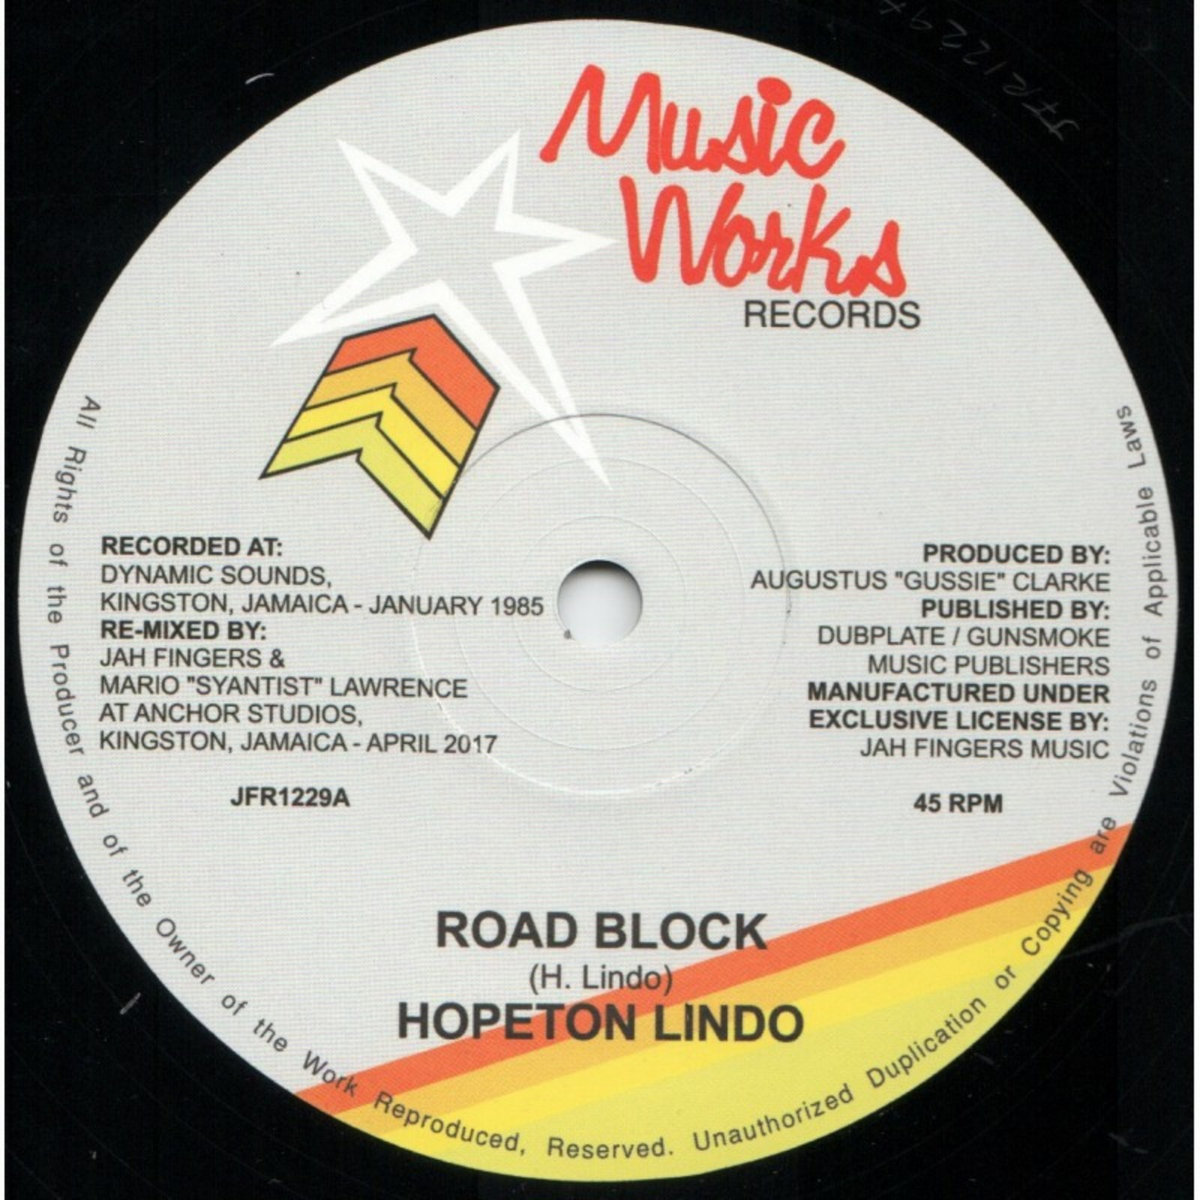 Vinyl 5 — I-ROOTS RECORDS